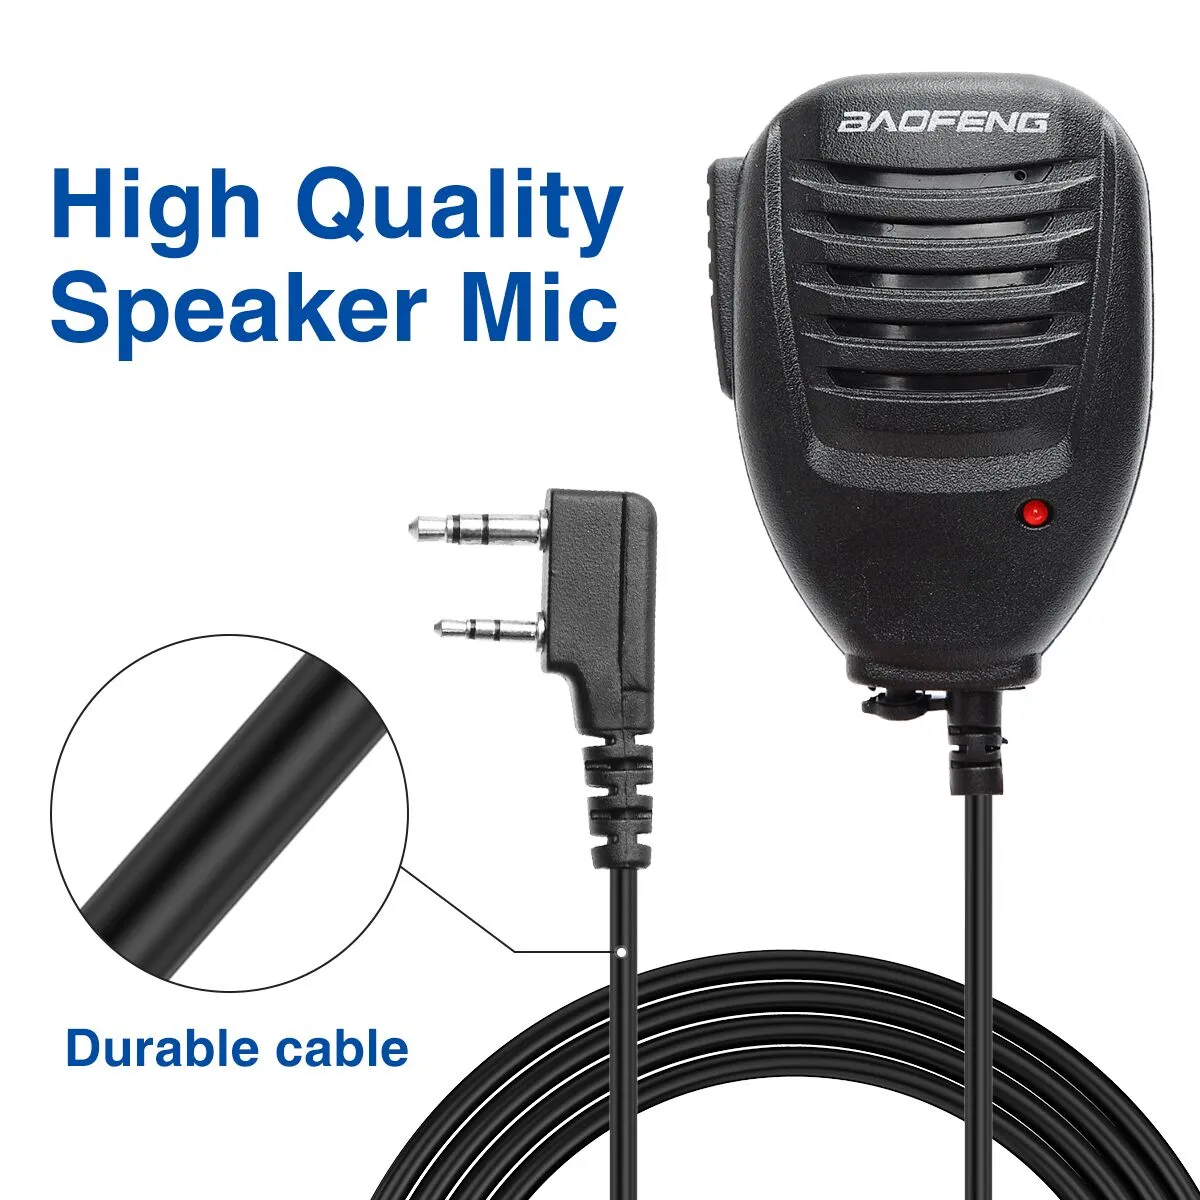 Baofeng walkie talkie haut-parleur microphone ptt pour portable bidiromutiant radio uv-13 pro uv-5r uv-10r bf-uv5r / 888s